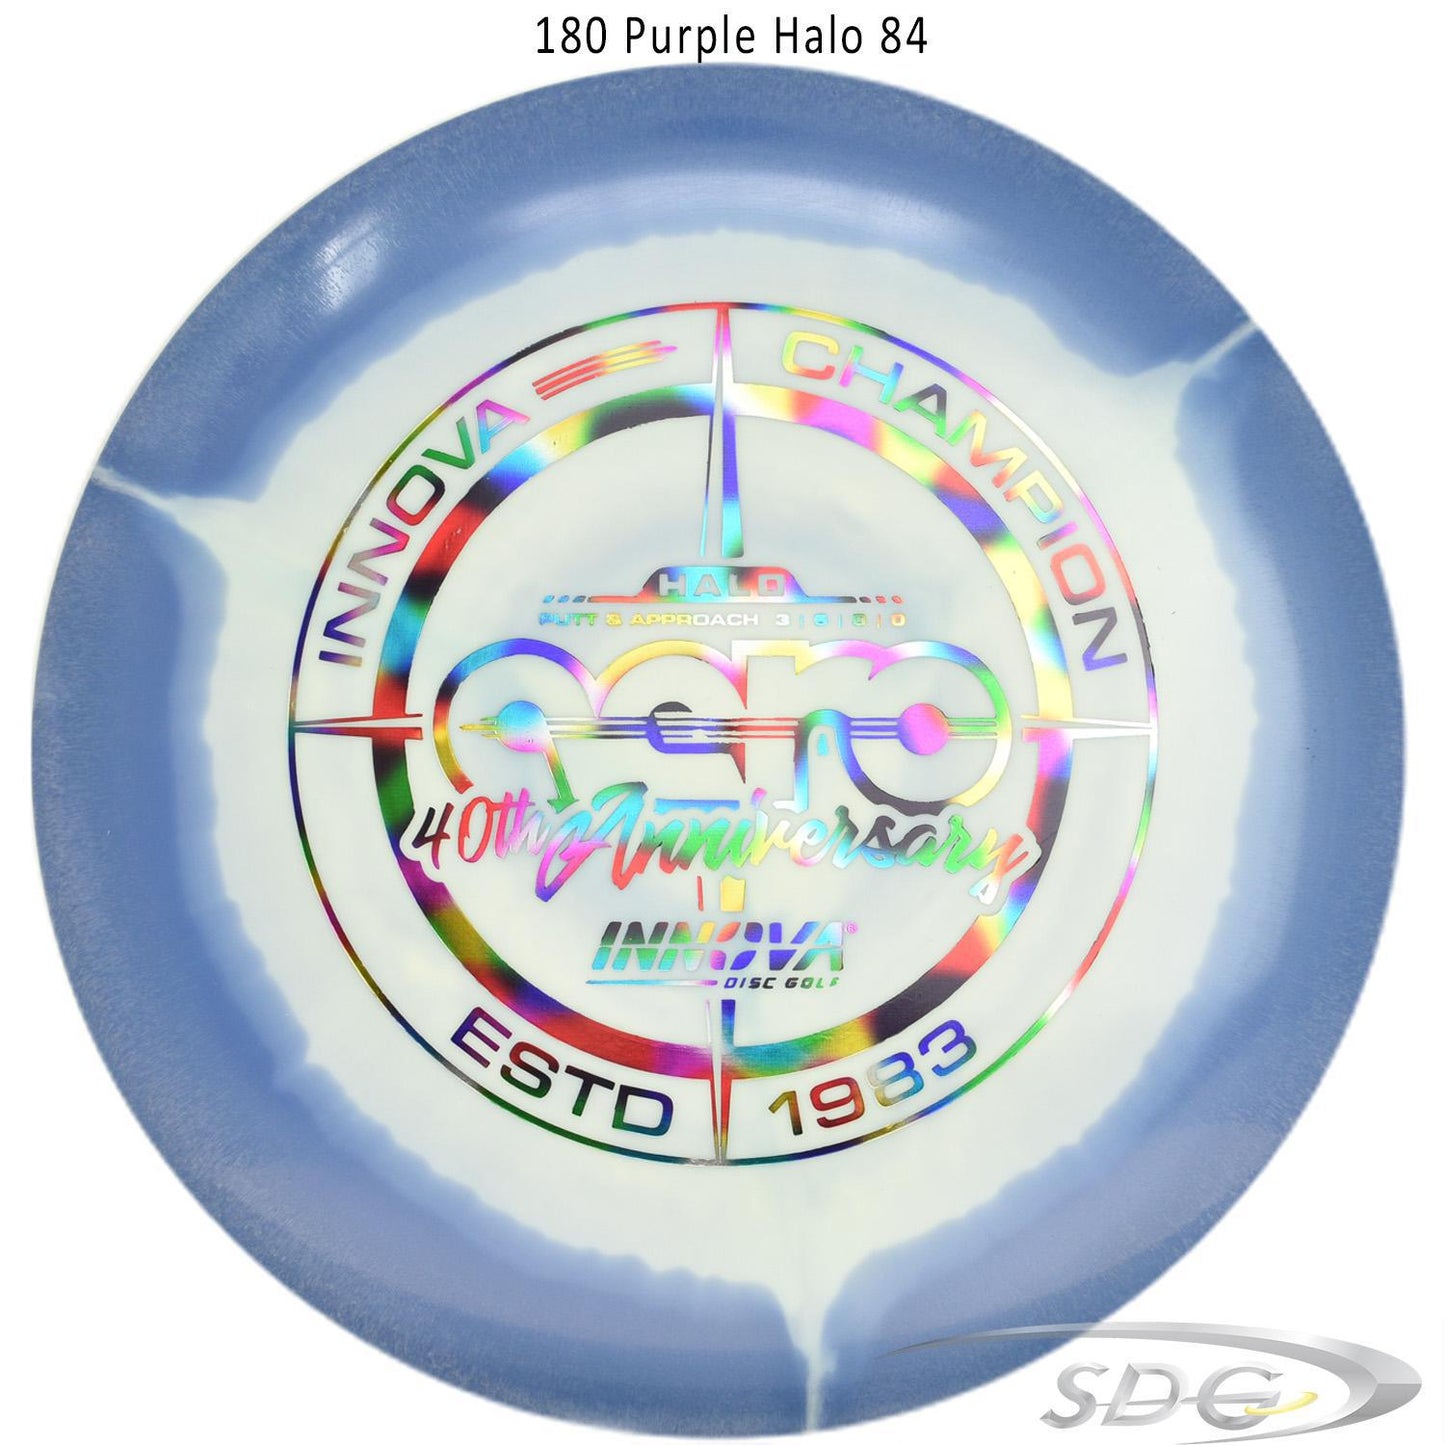 innova-halo-star-aero-40th-anniversary-le-disc-golf-putter 180 Purple Halo 84 